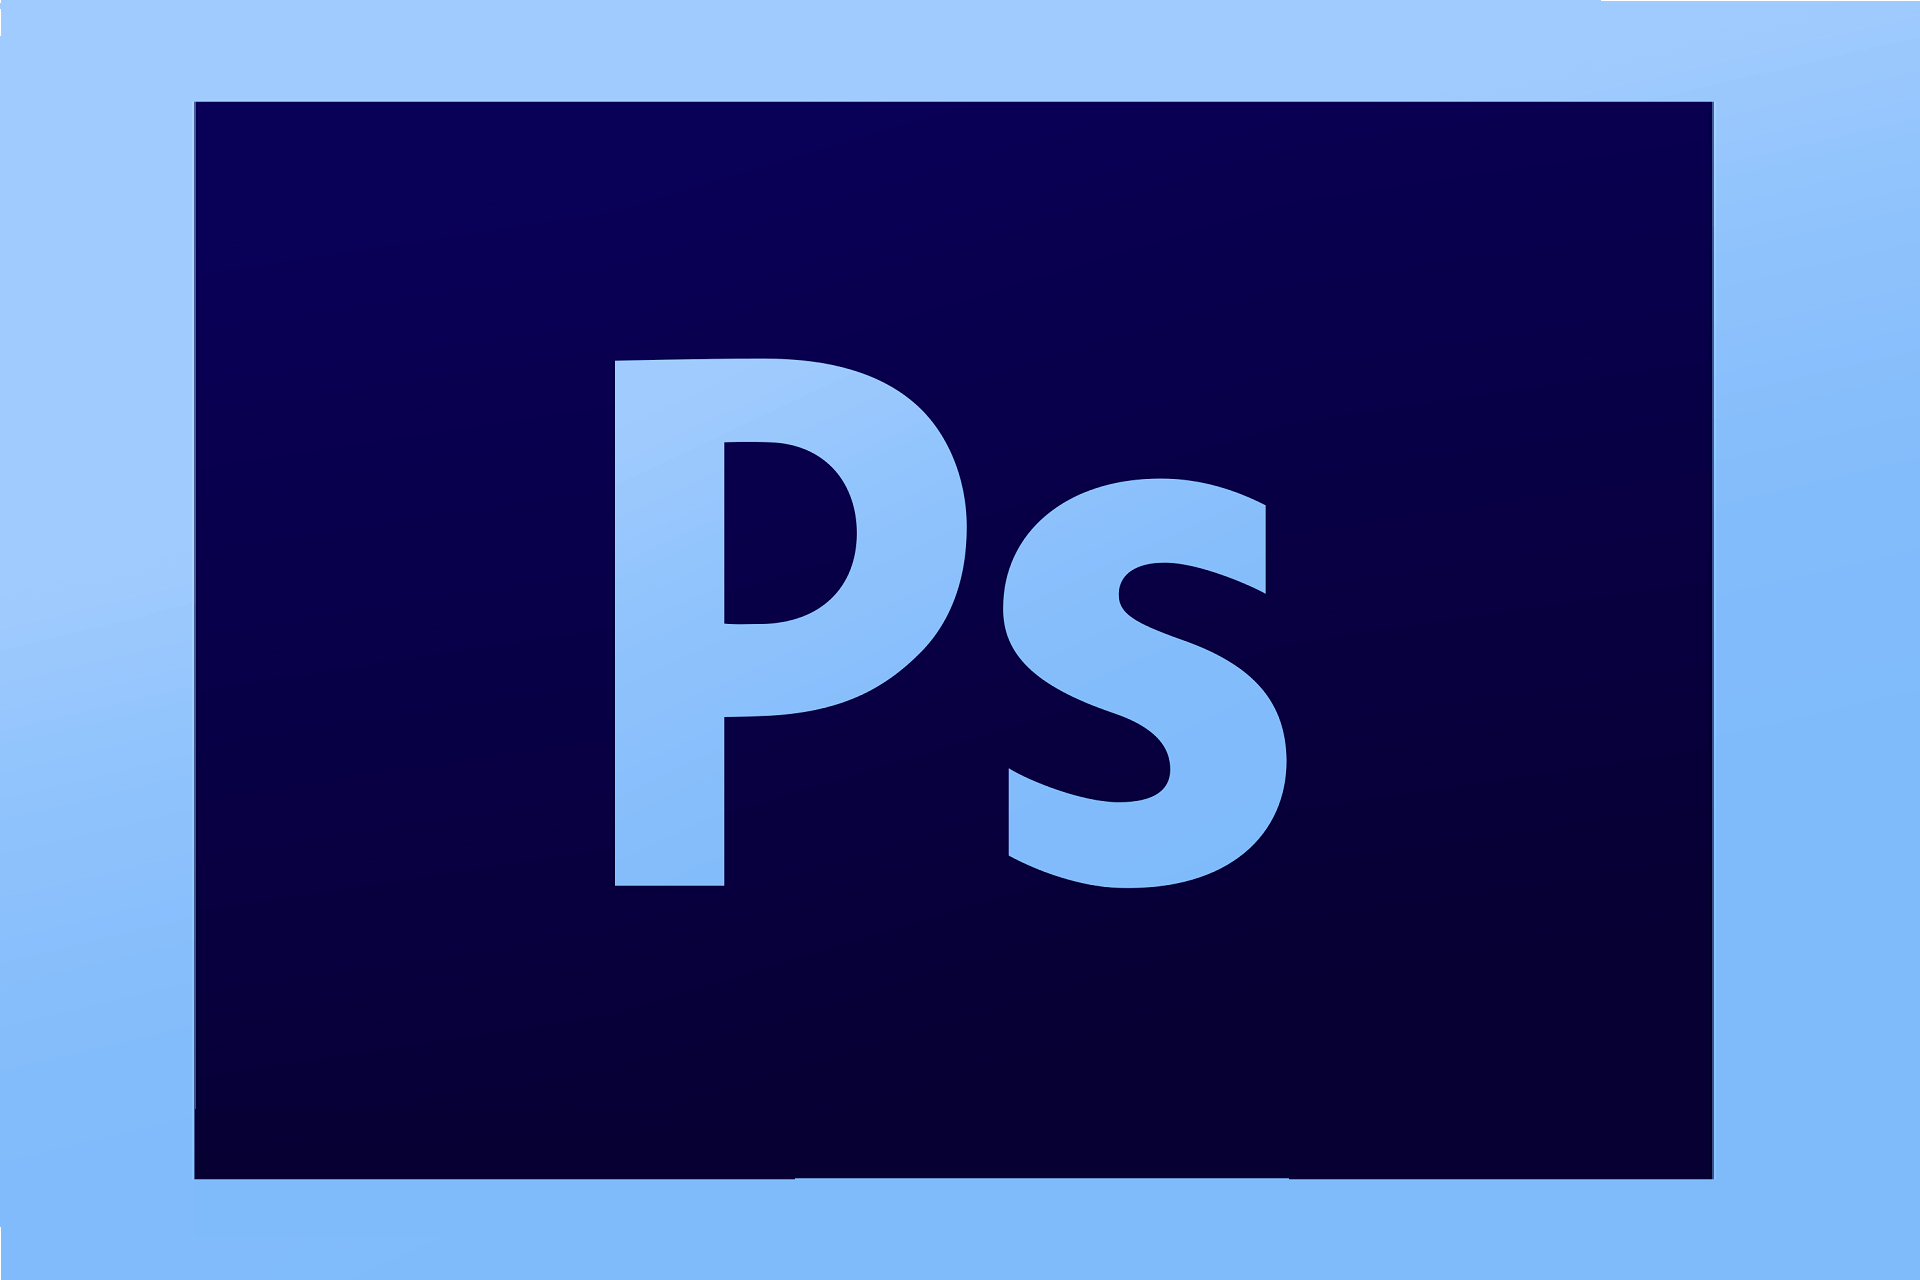 Photoshop CS2 installation error in Windows 10